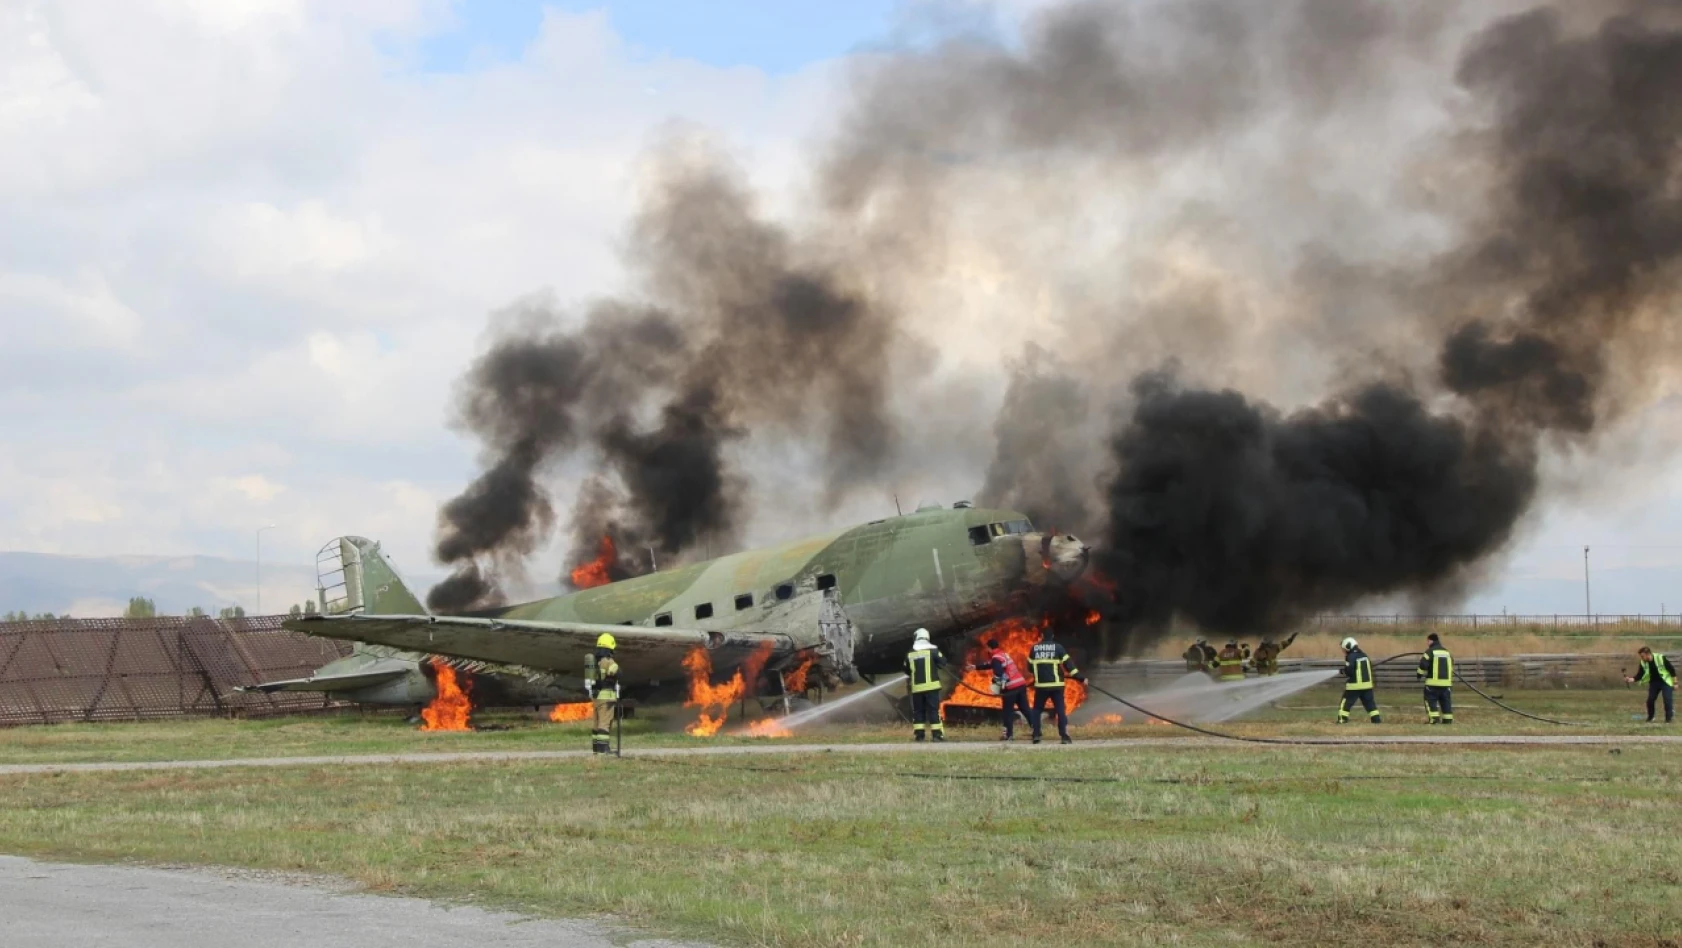 Kayseri'de yanan uçaktan dumanlar yükseldi! Nefes kesen anlar